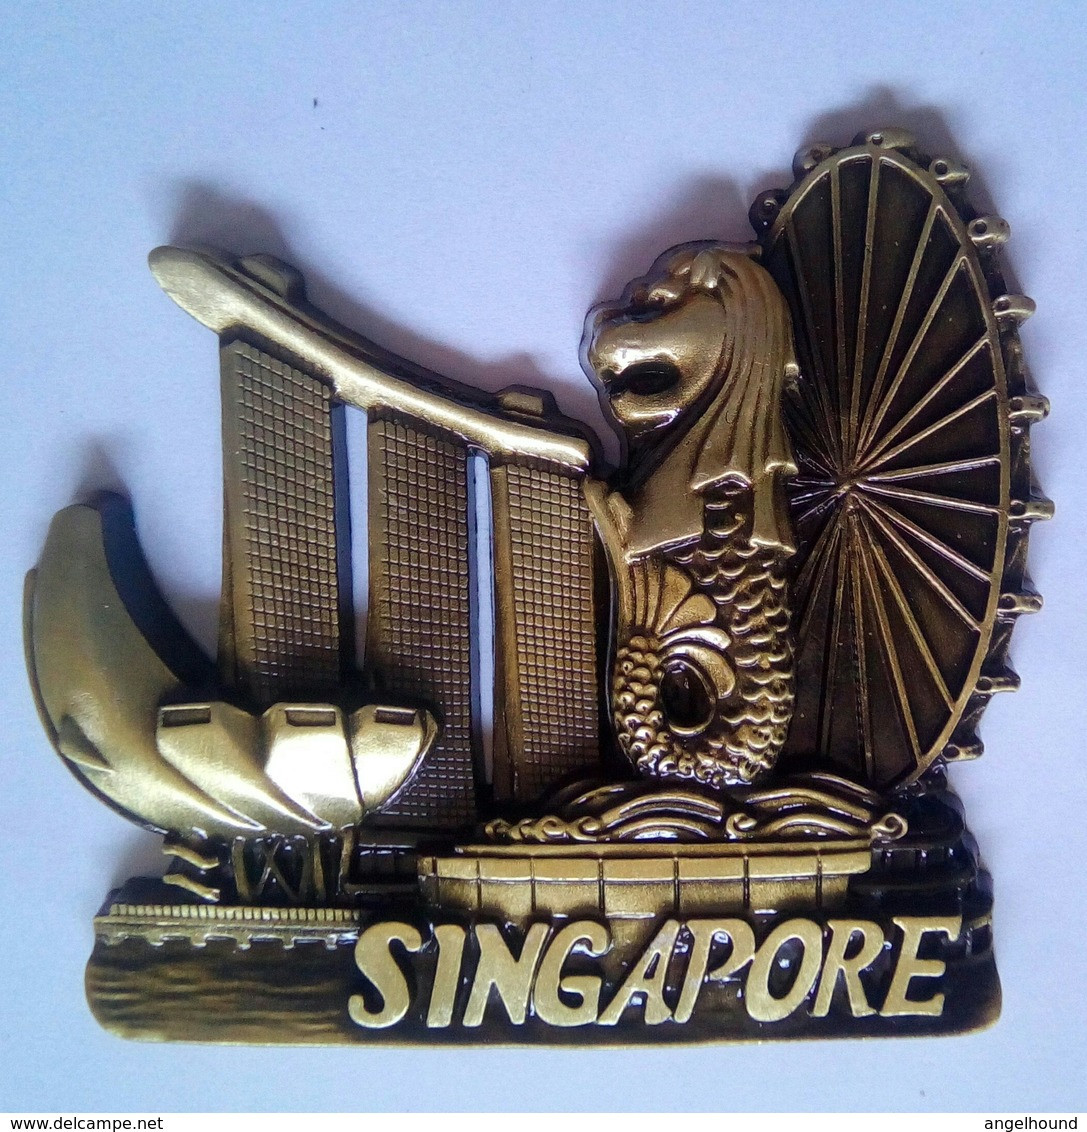 Singapore - Tourism